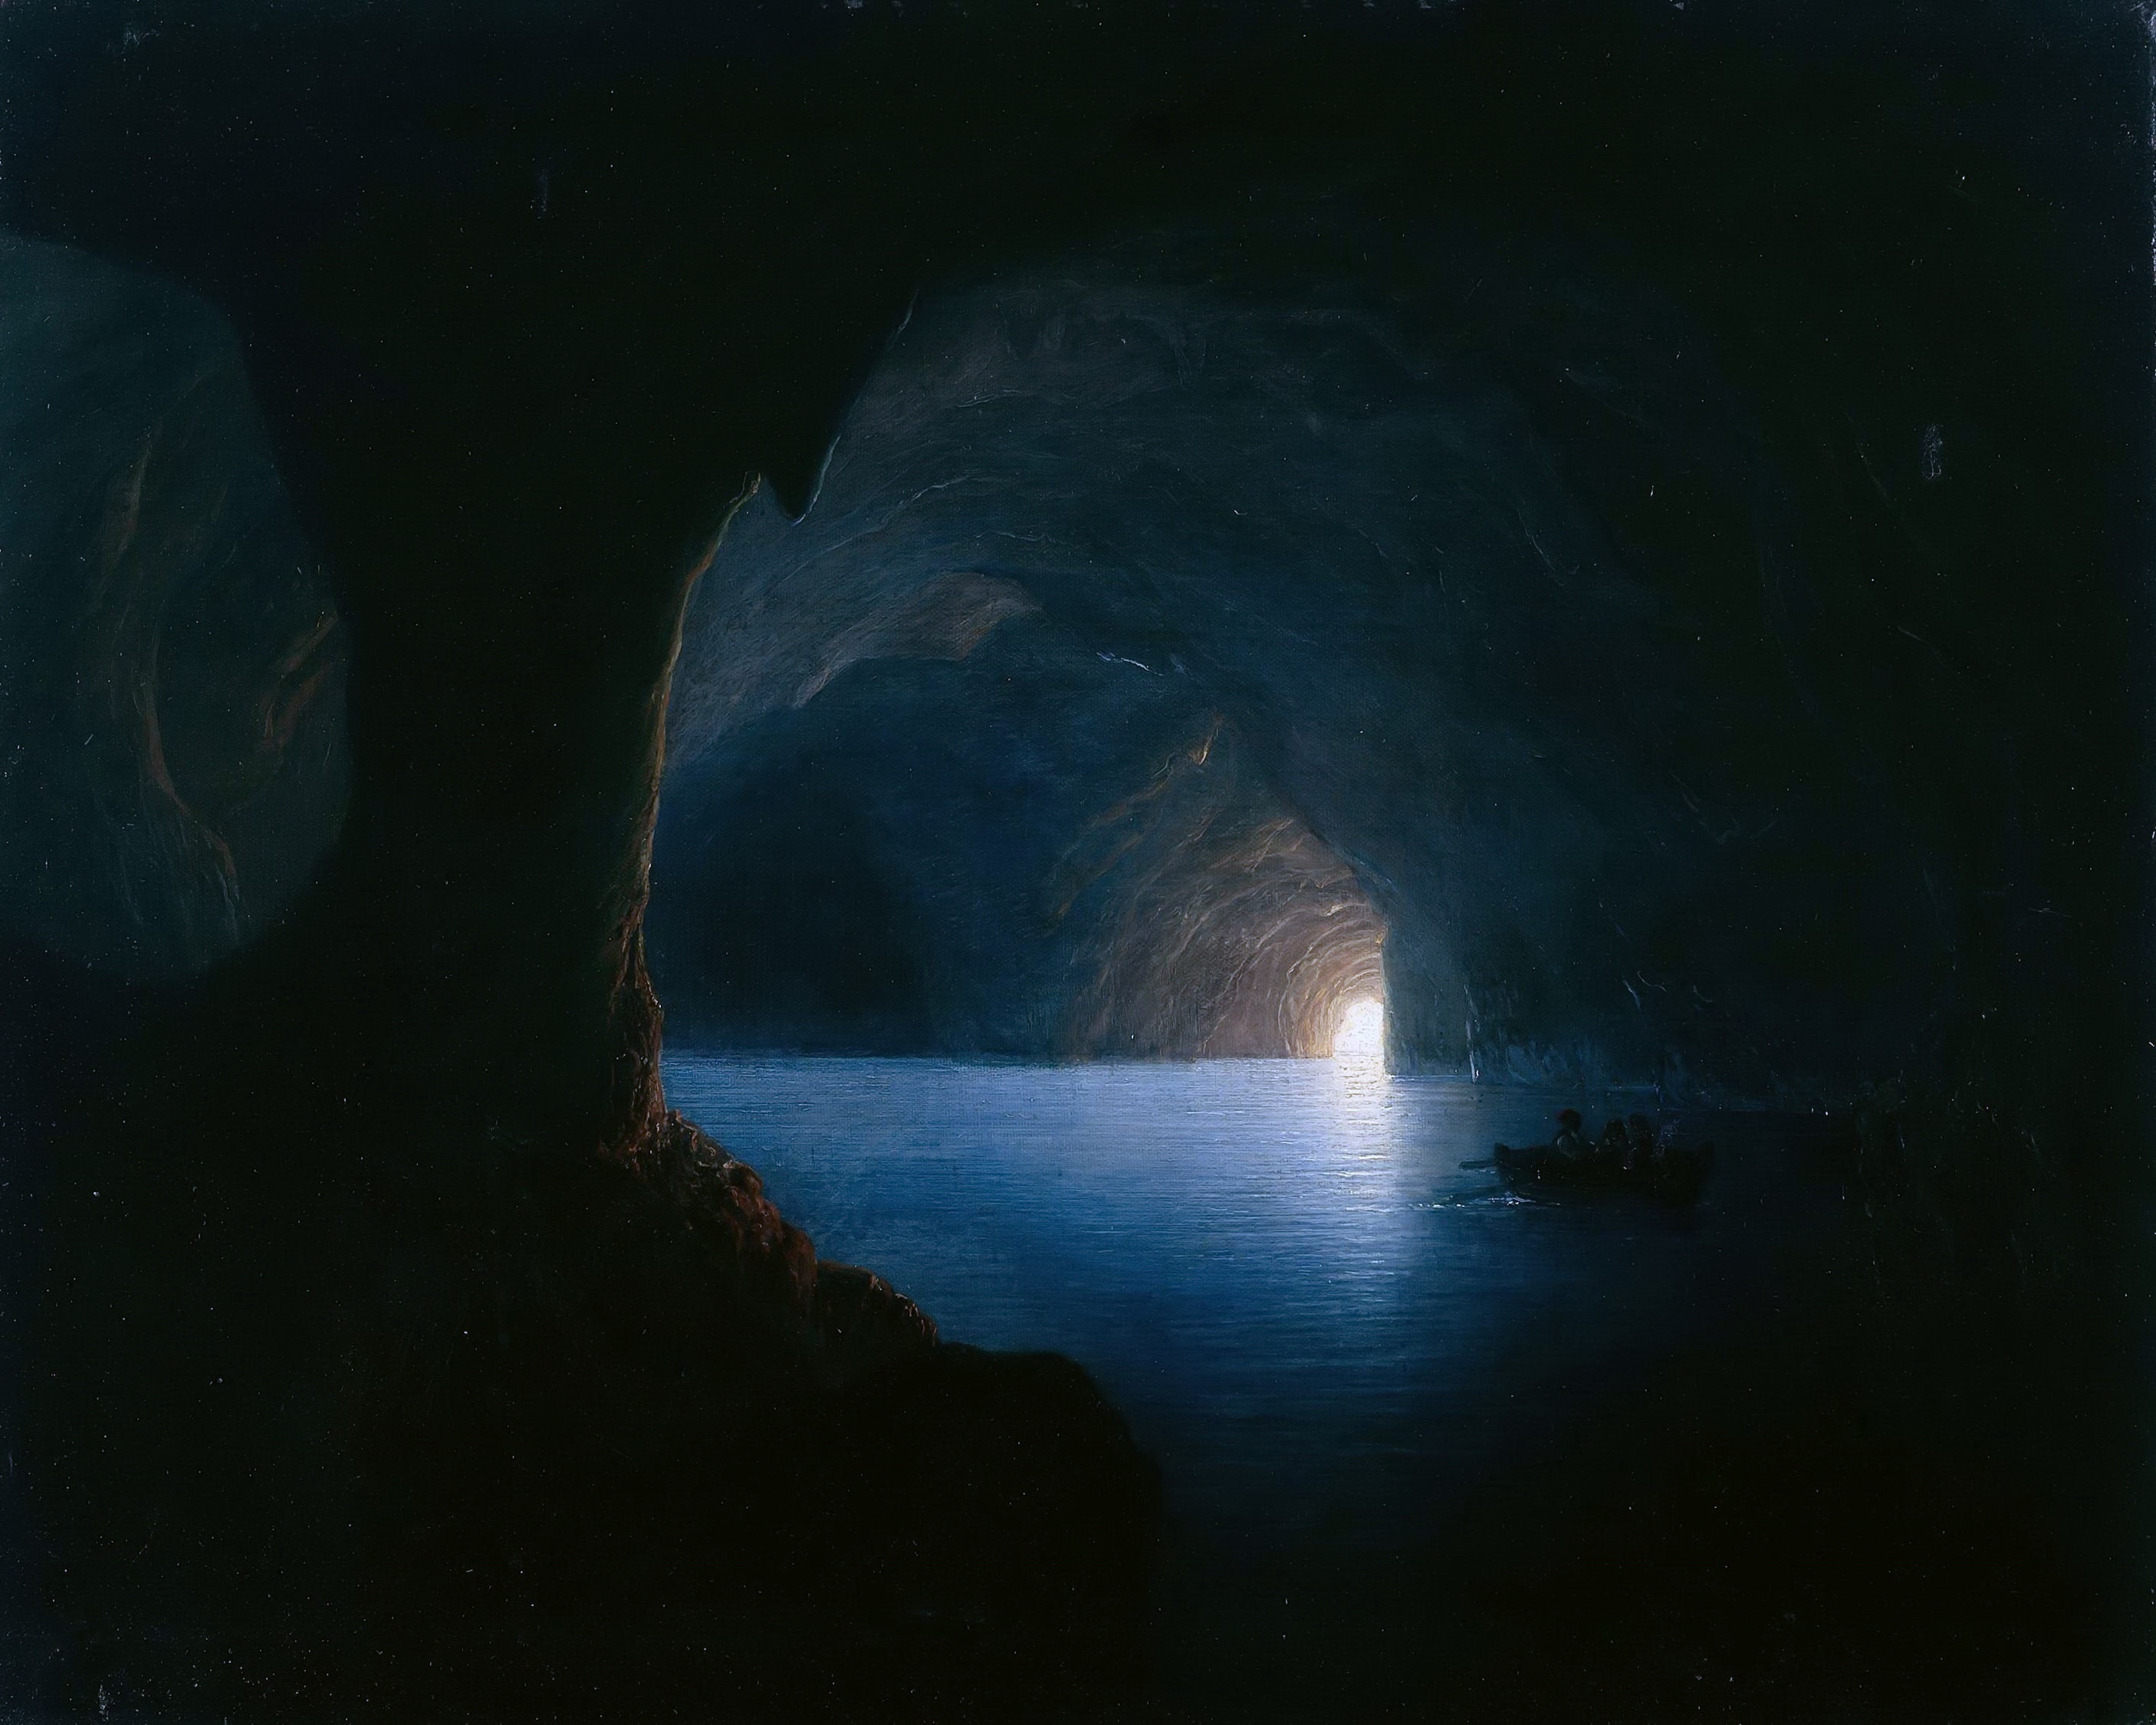 La Grotta Azzurra di Capri by Carl Friedrich Seiffert - 1860 - 65 x 81 cm Alte Nationalgalerie